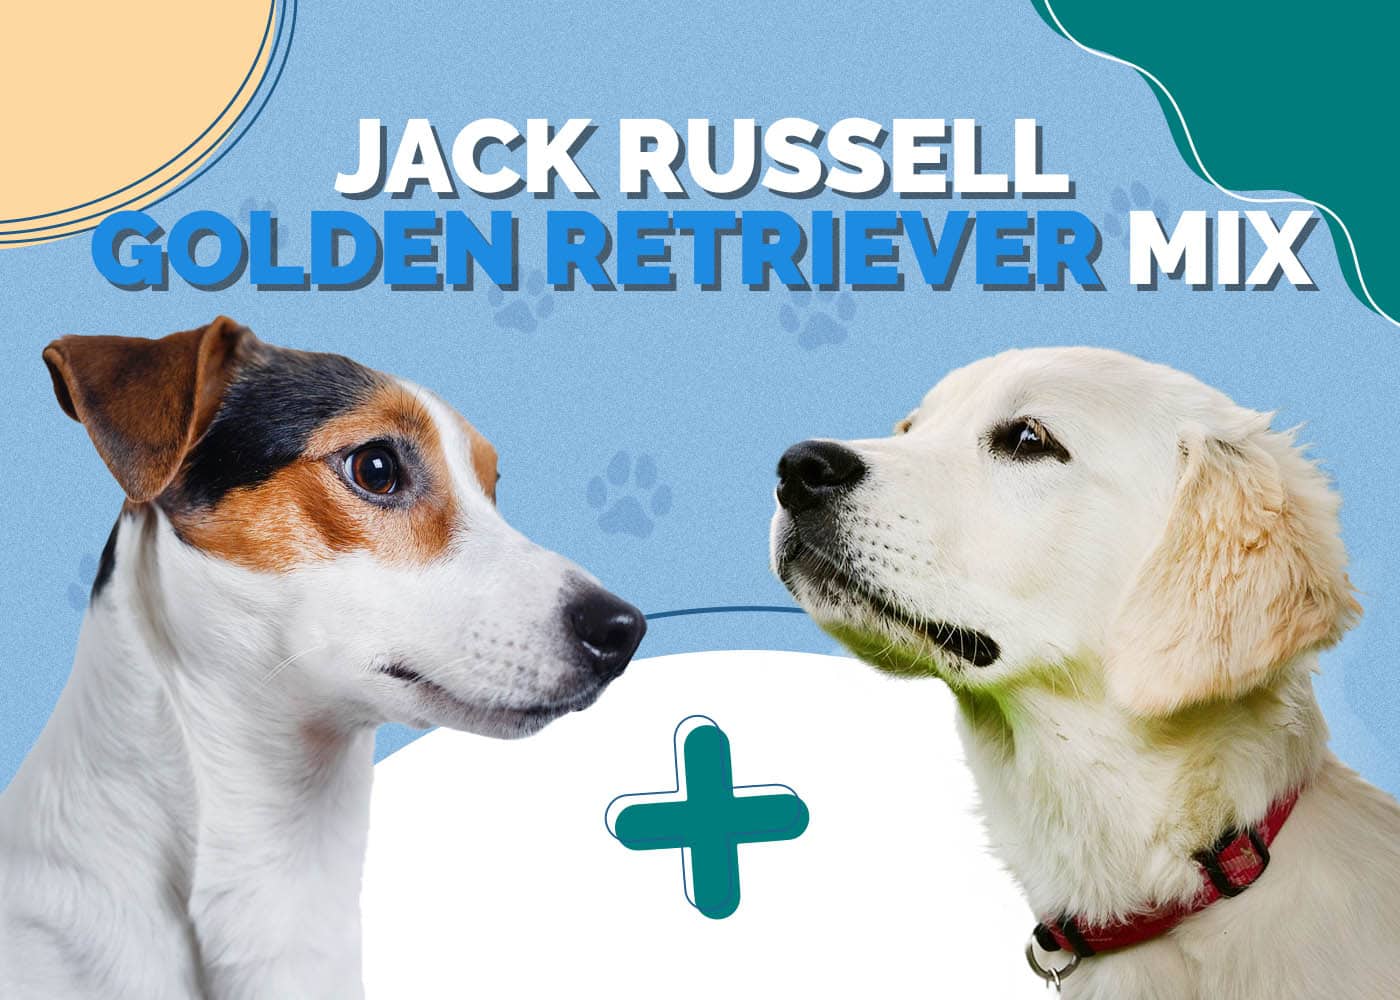 Jack Russell Golden Retriever Mix